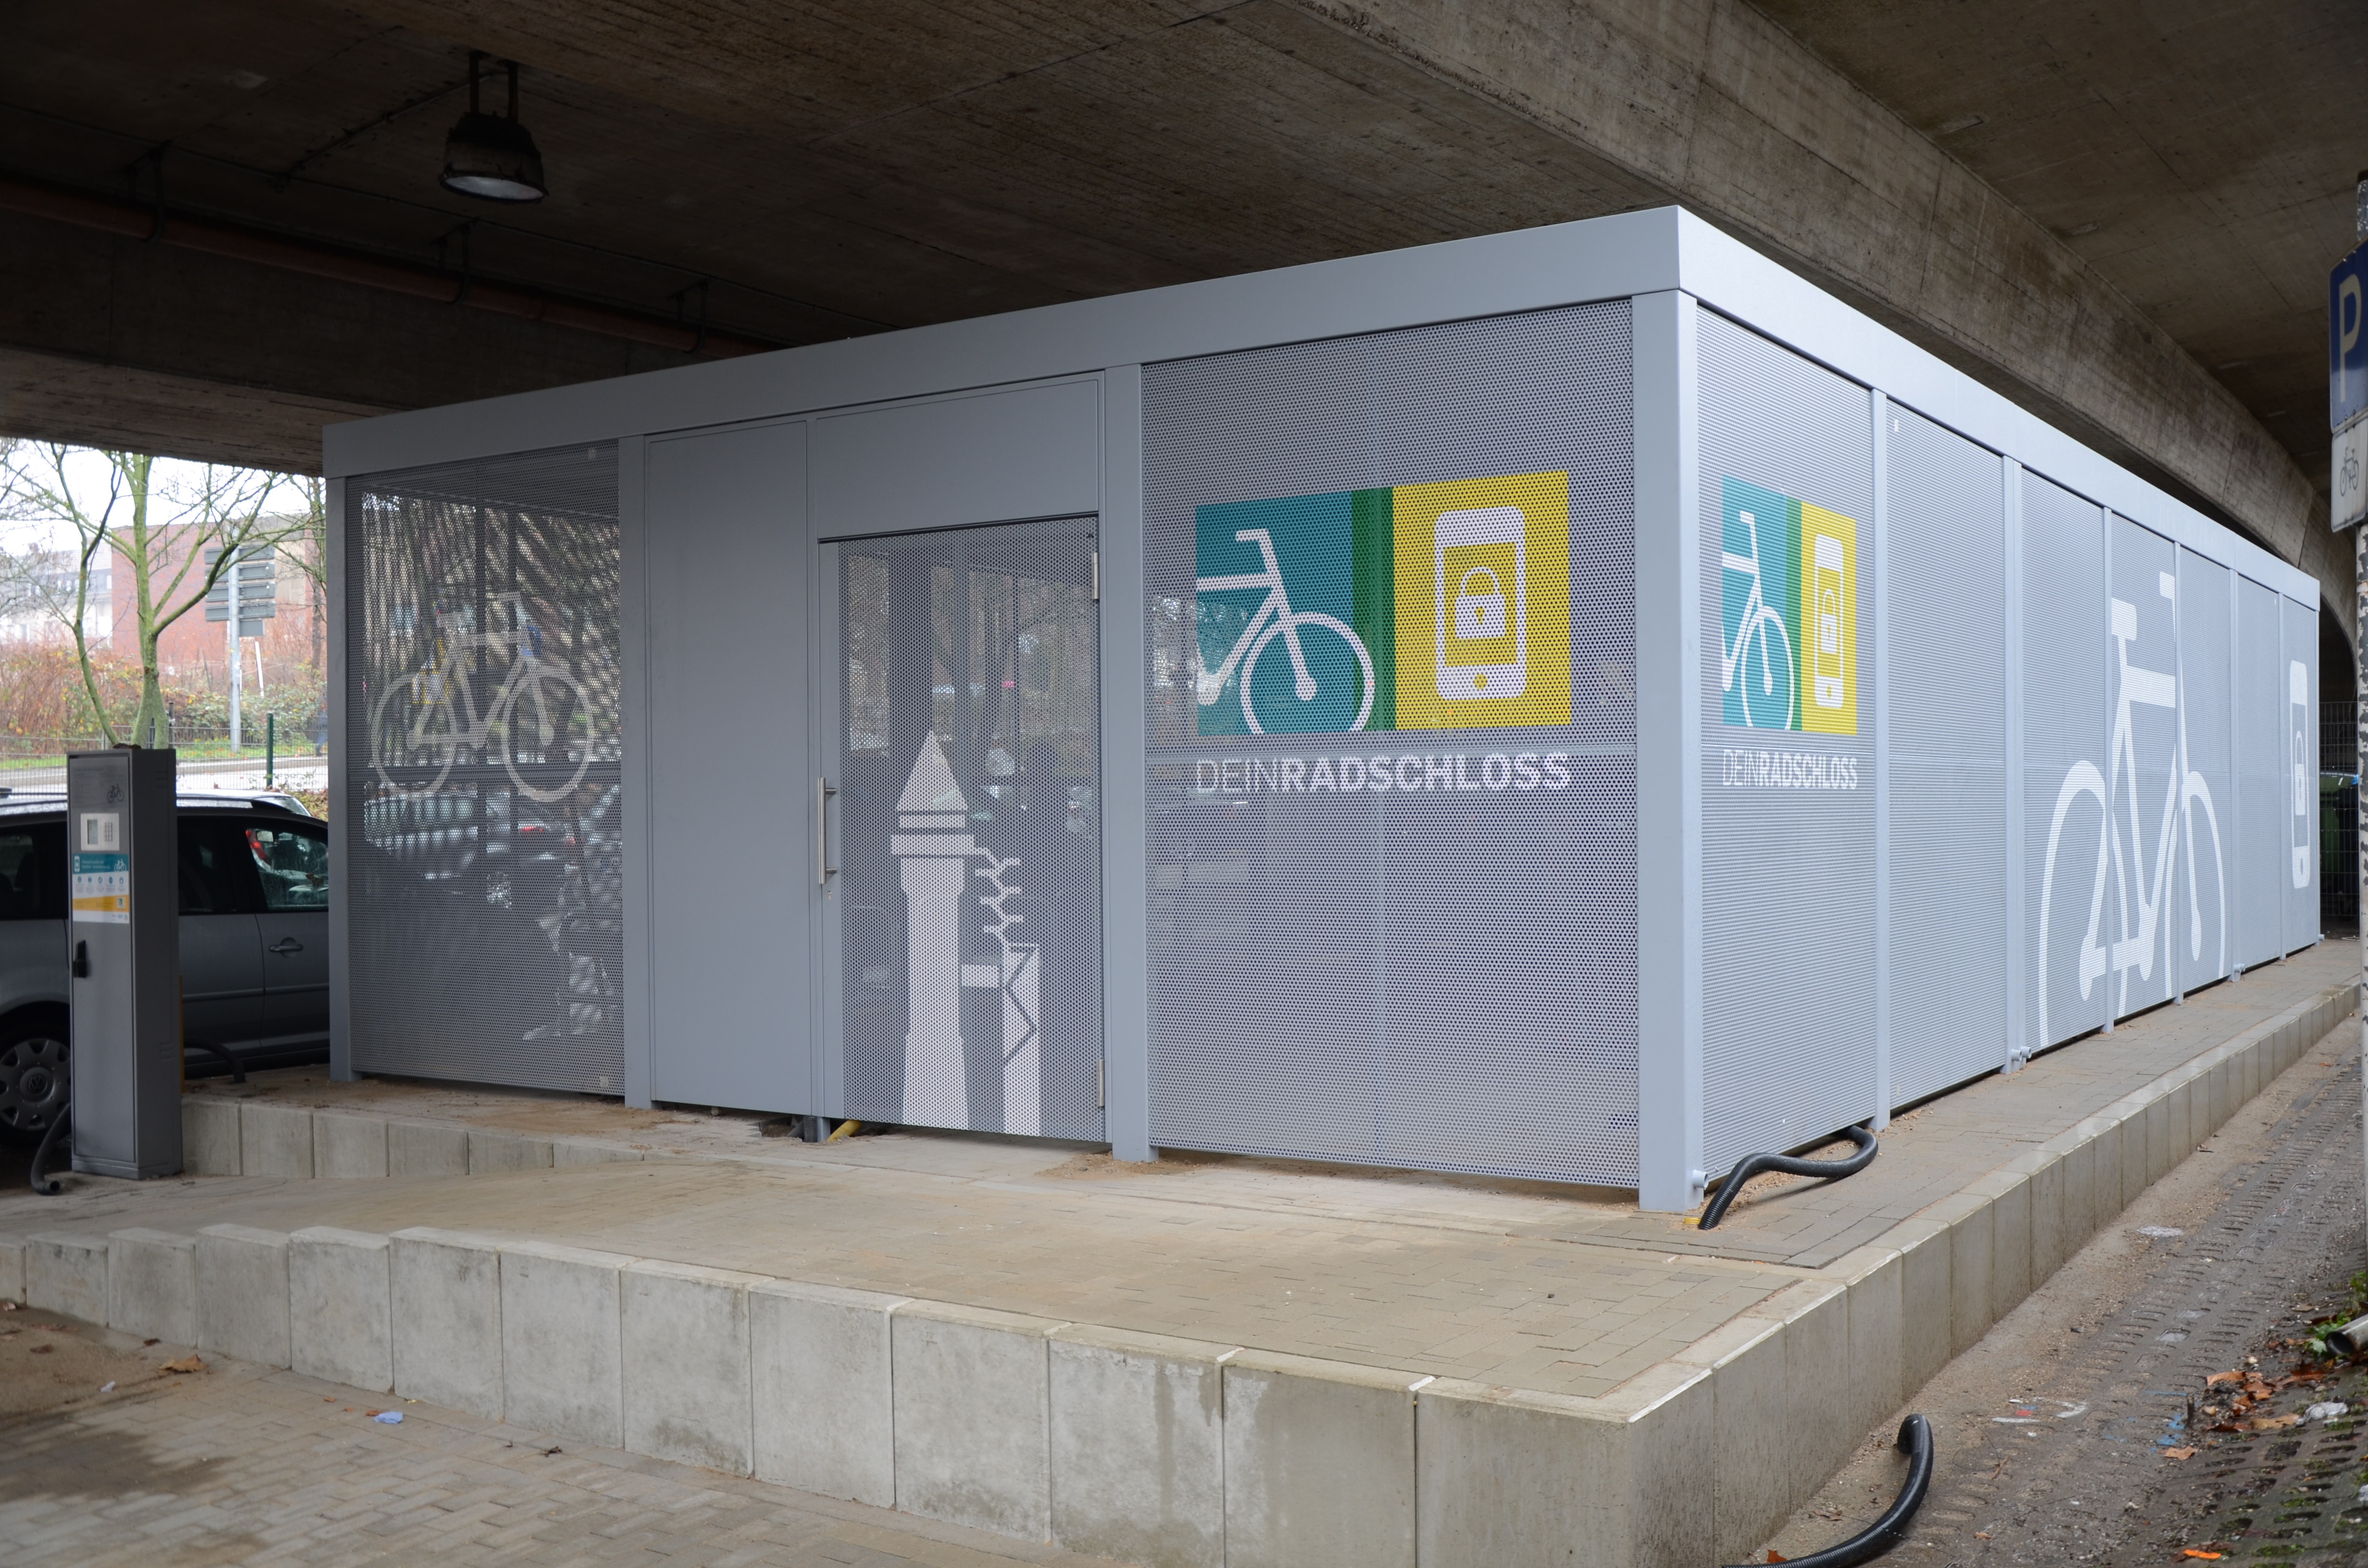 Dein Radschloss in Essen: Neue Fahrradboxen an der Mobilstation